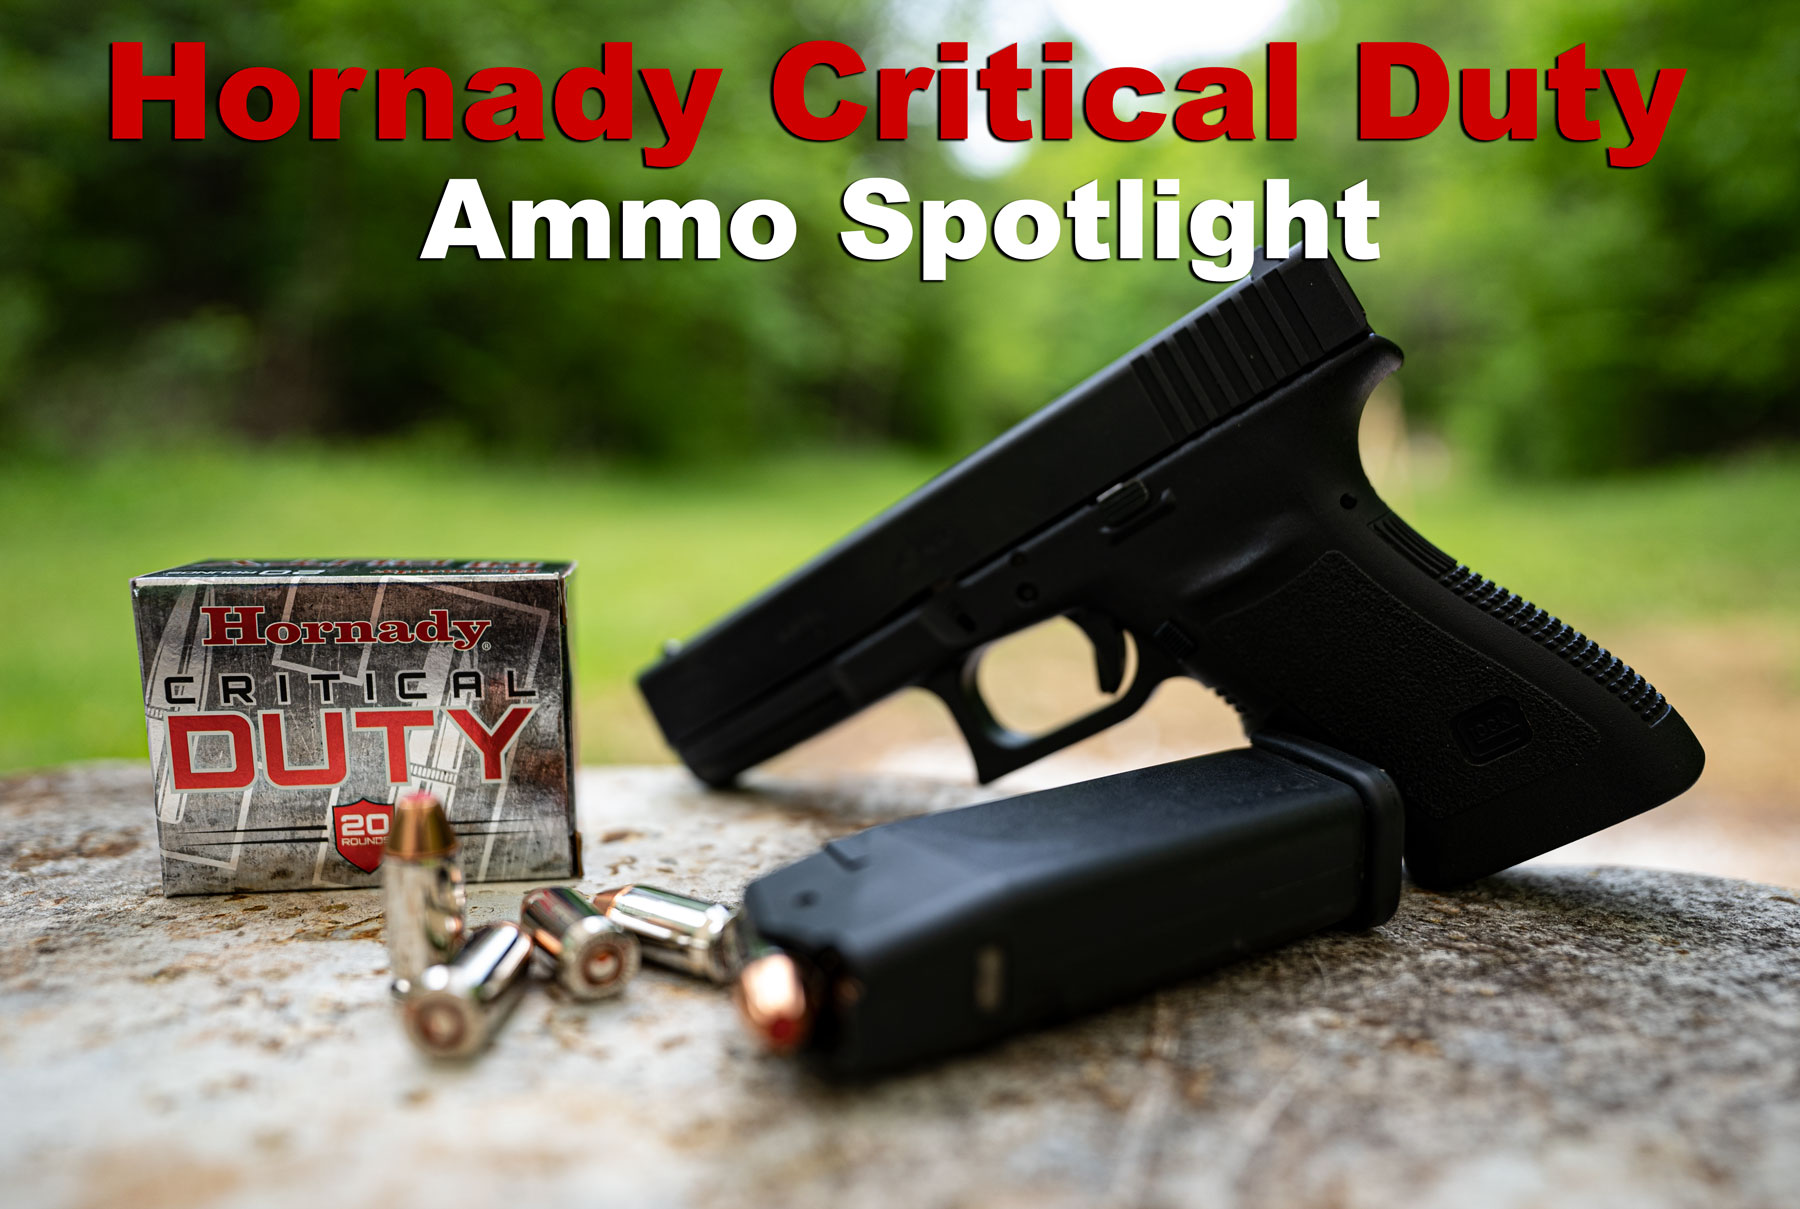 Hornady Critical Duty ammo